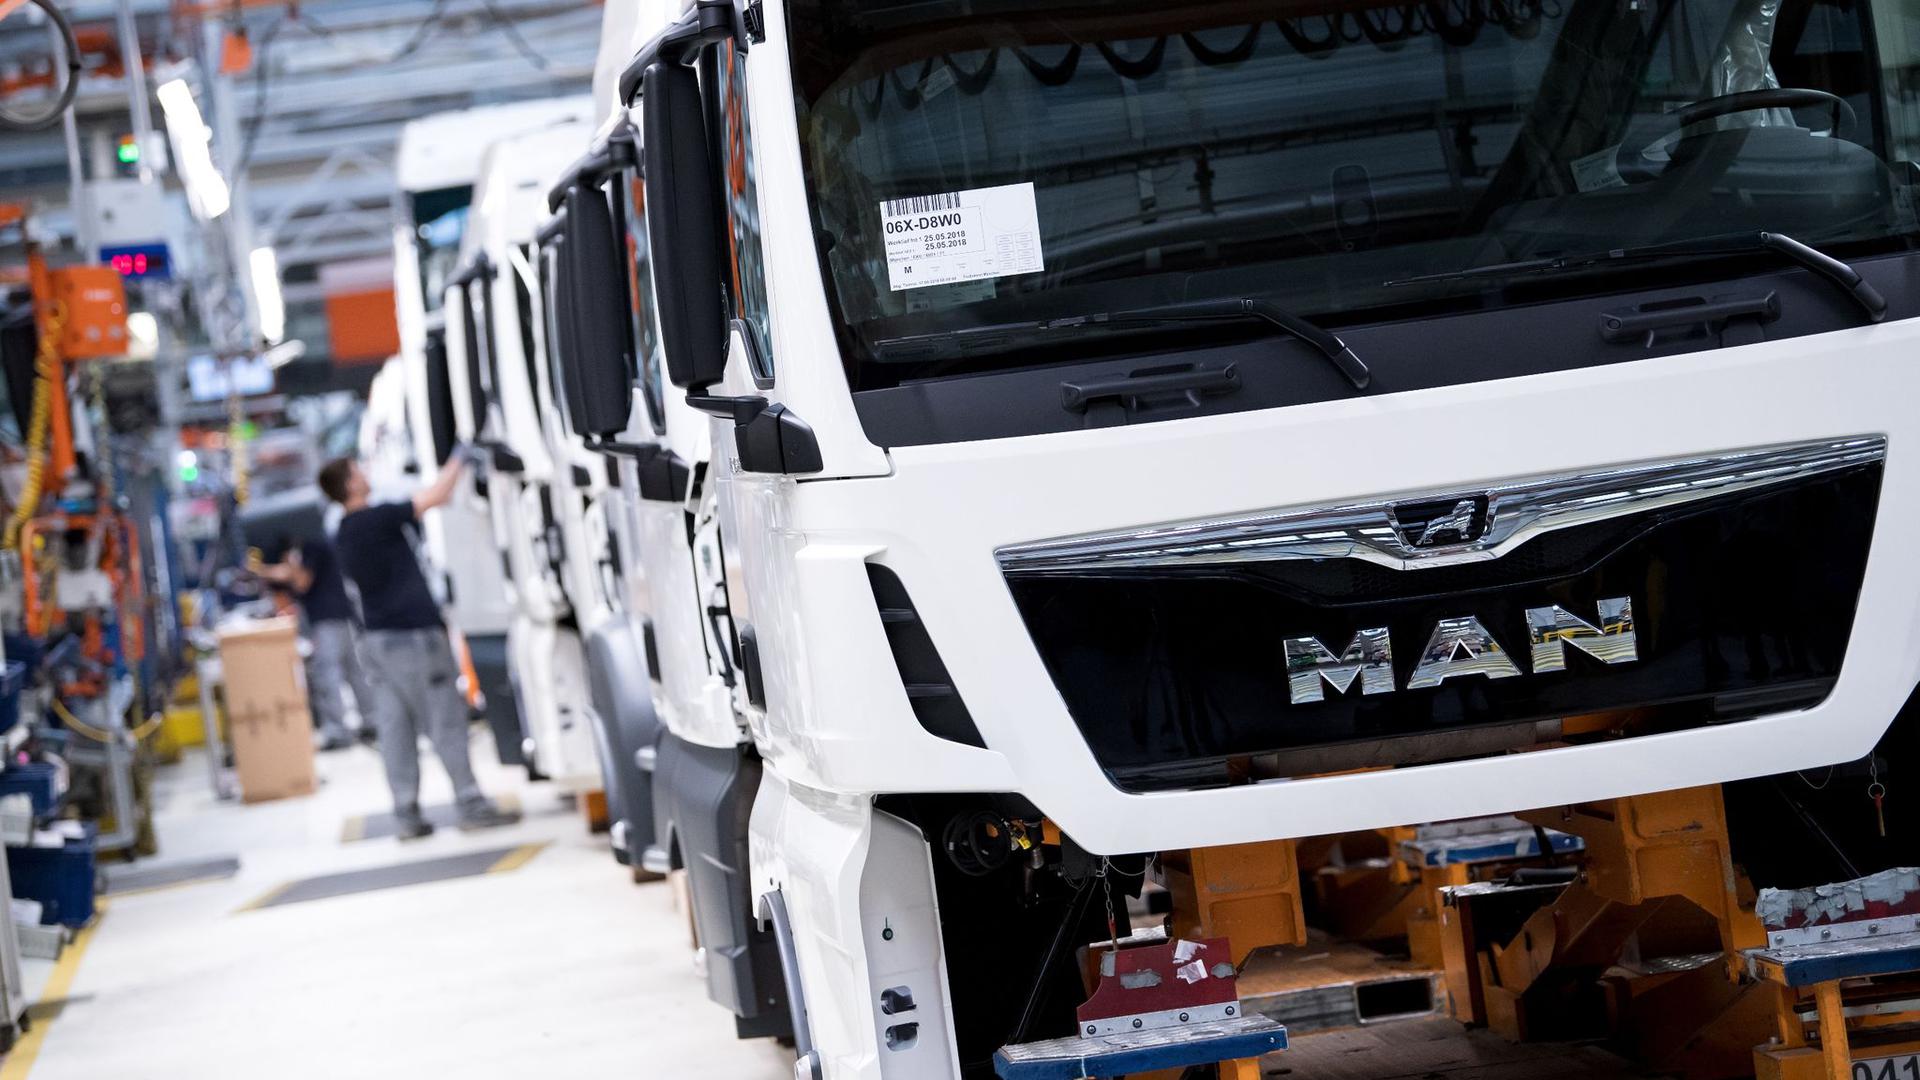 Der Lastwagenbauer MAN gehört zur VW-Lkw-Tochter Traton. Die VW-Nutzfahrzeugholding Traton und ihr japanischer Partner Hino wollen zusammen künftig Elektro-Lkw entwickeln.